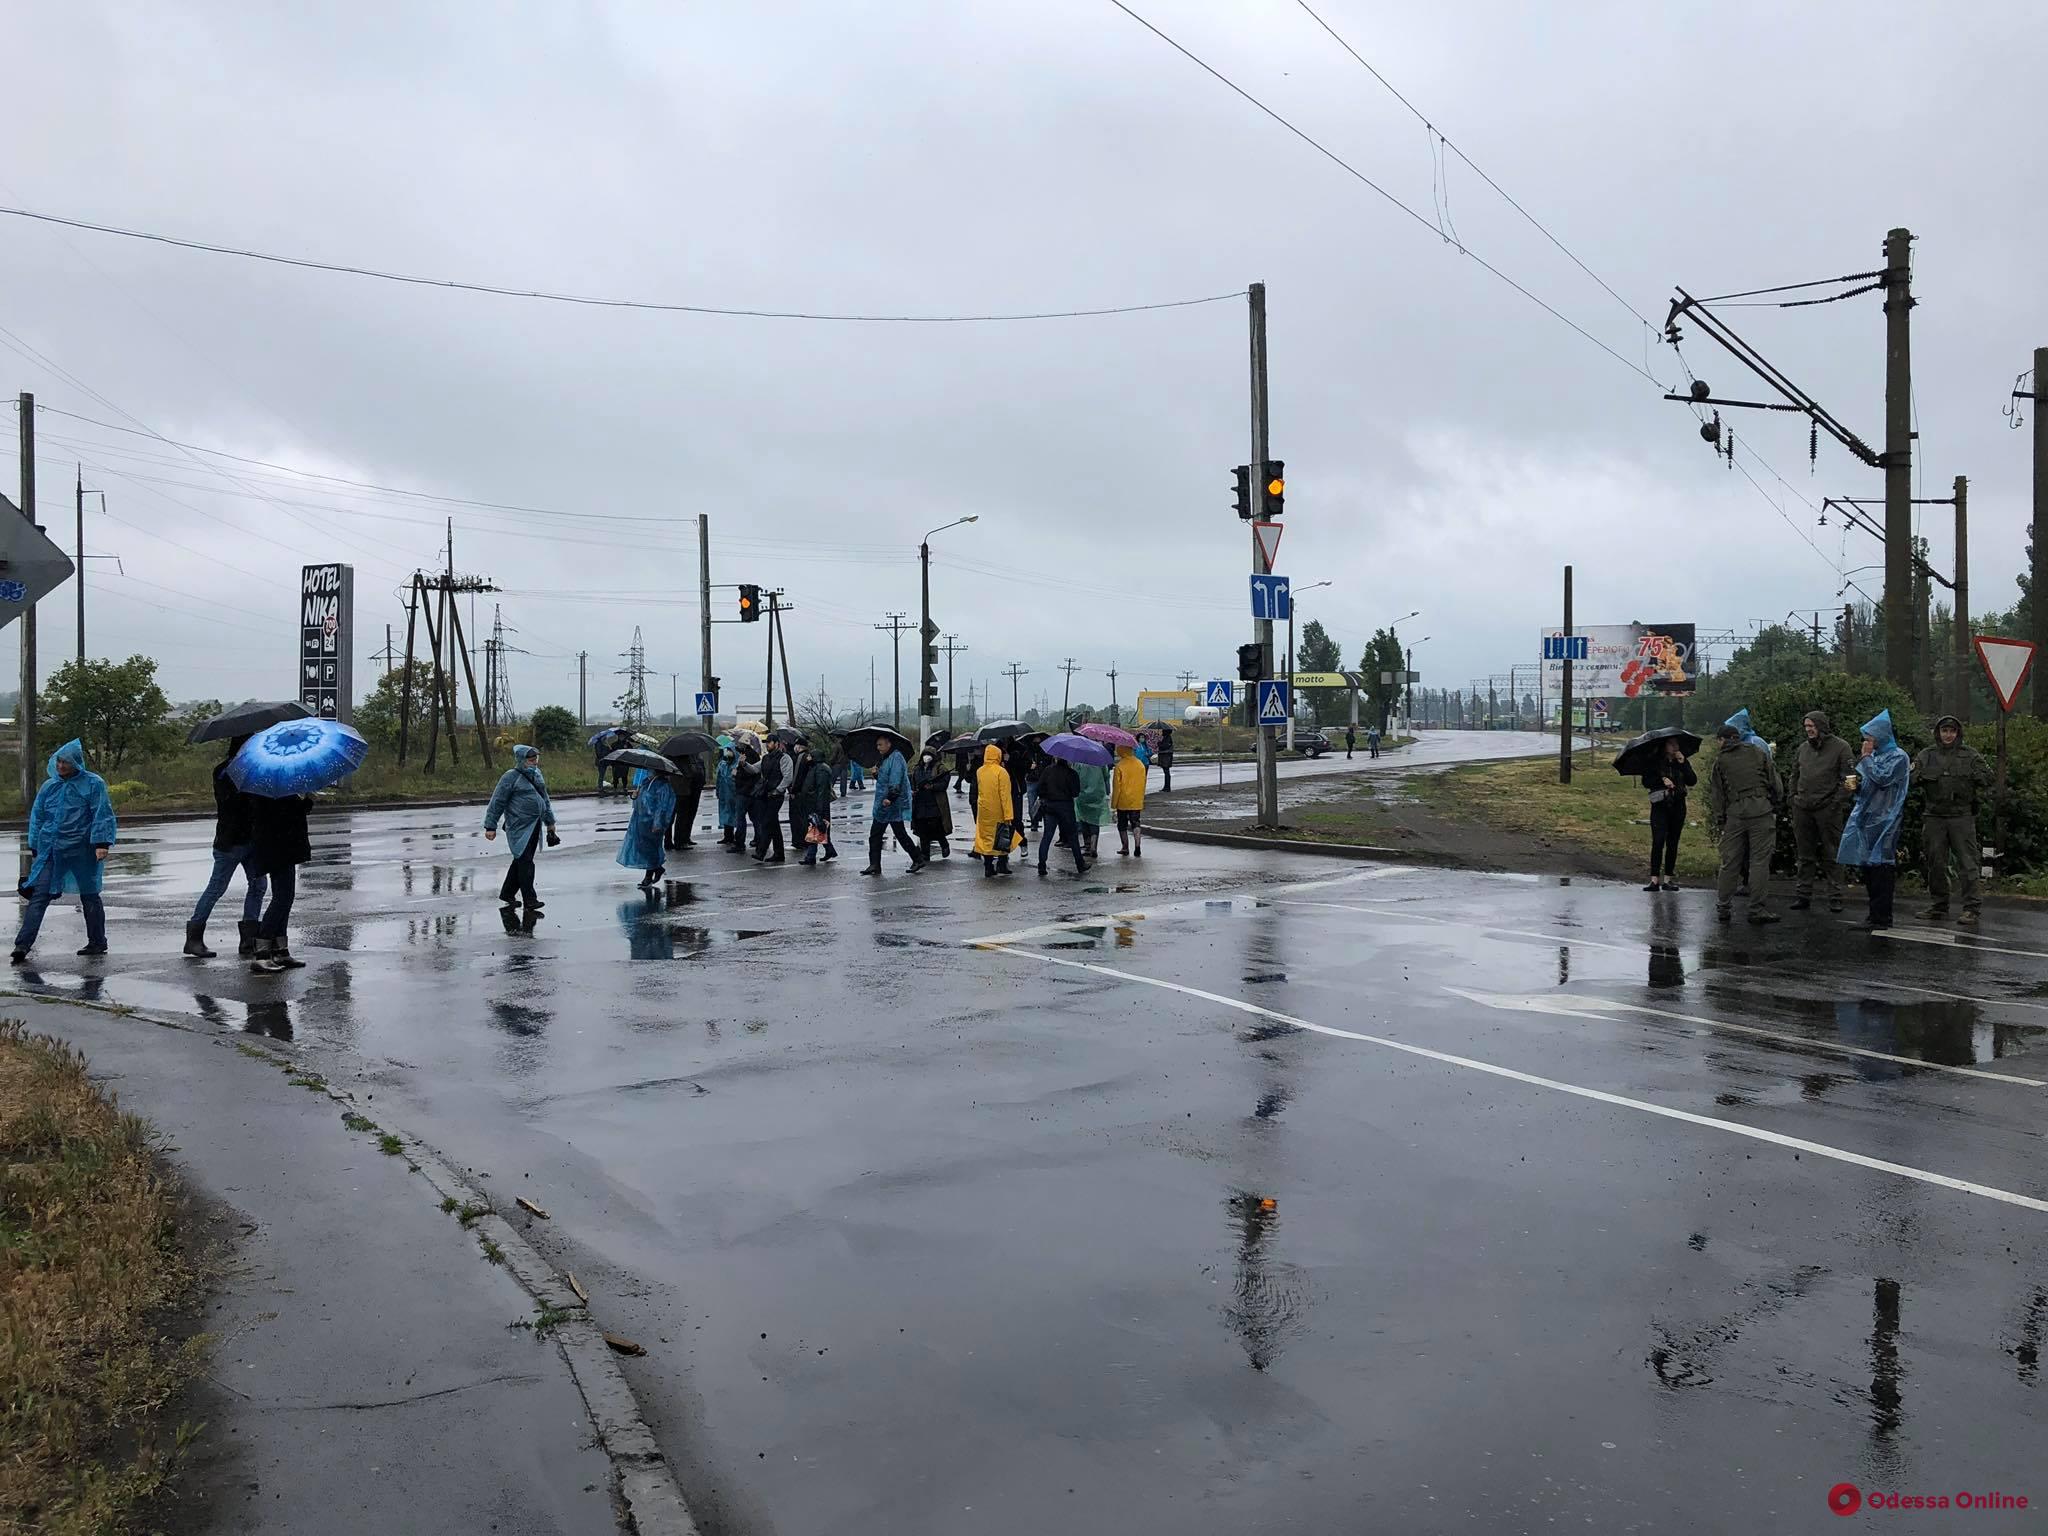 Восемь месяцев без зарплаты: в Черноморске участники акции перекрывали дорогу (фото)